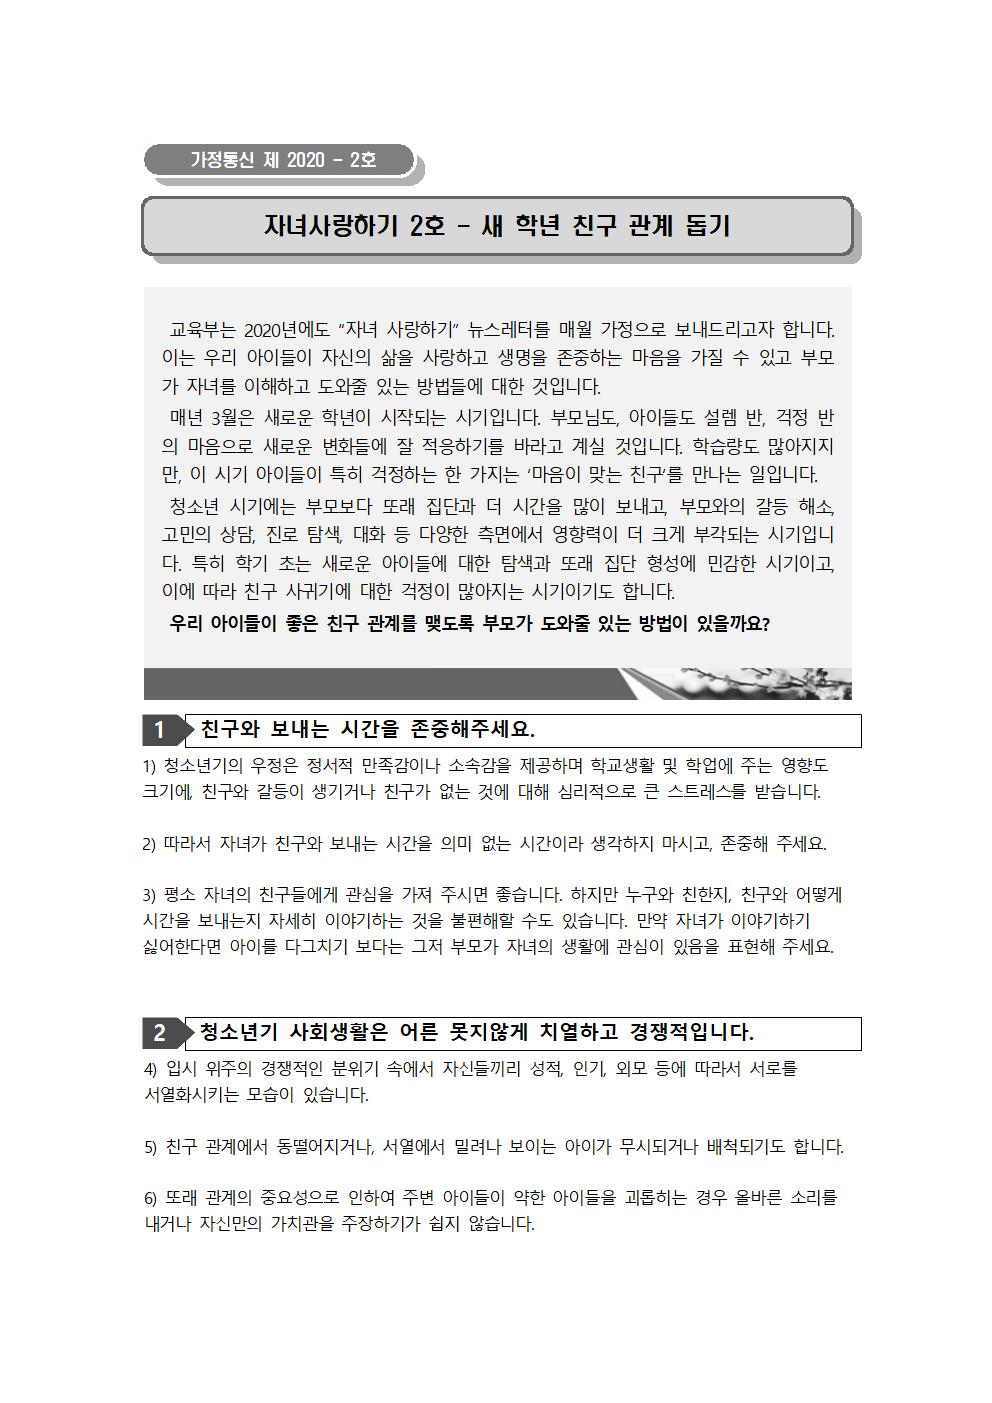 자살예방뉴스레터 2호(5.13.)001